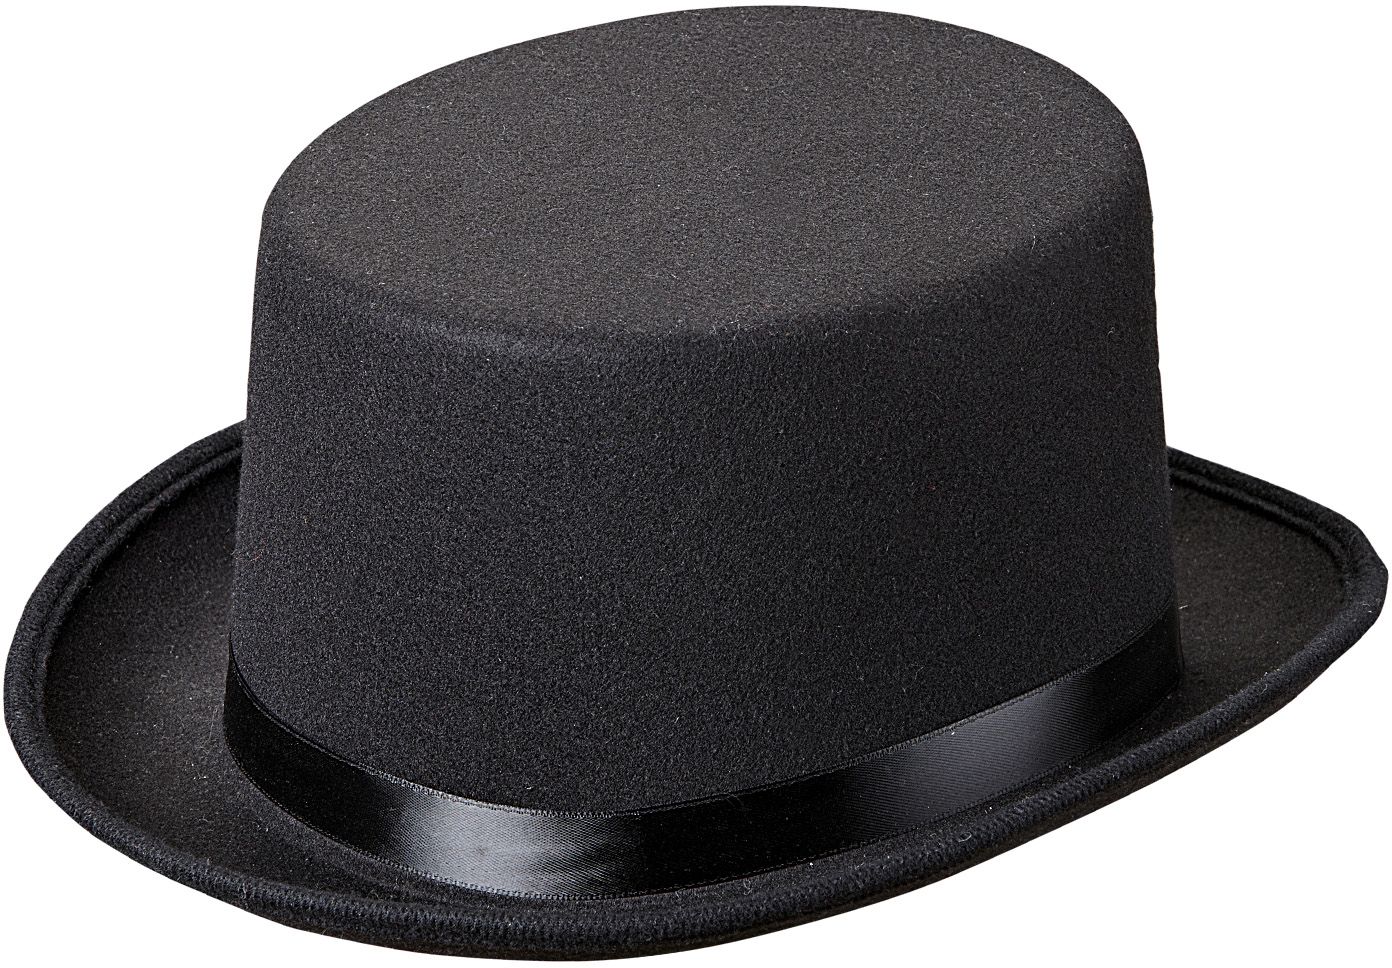 Zwarte luxe hoge hoed